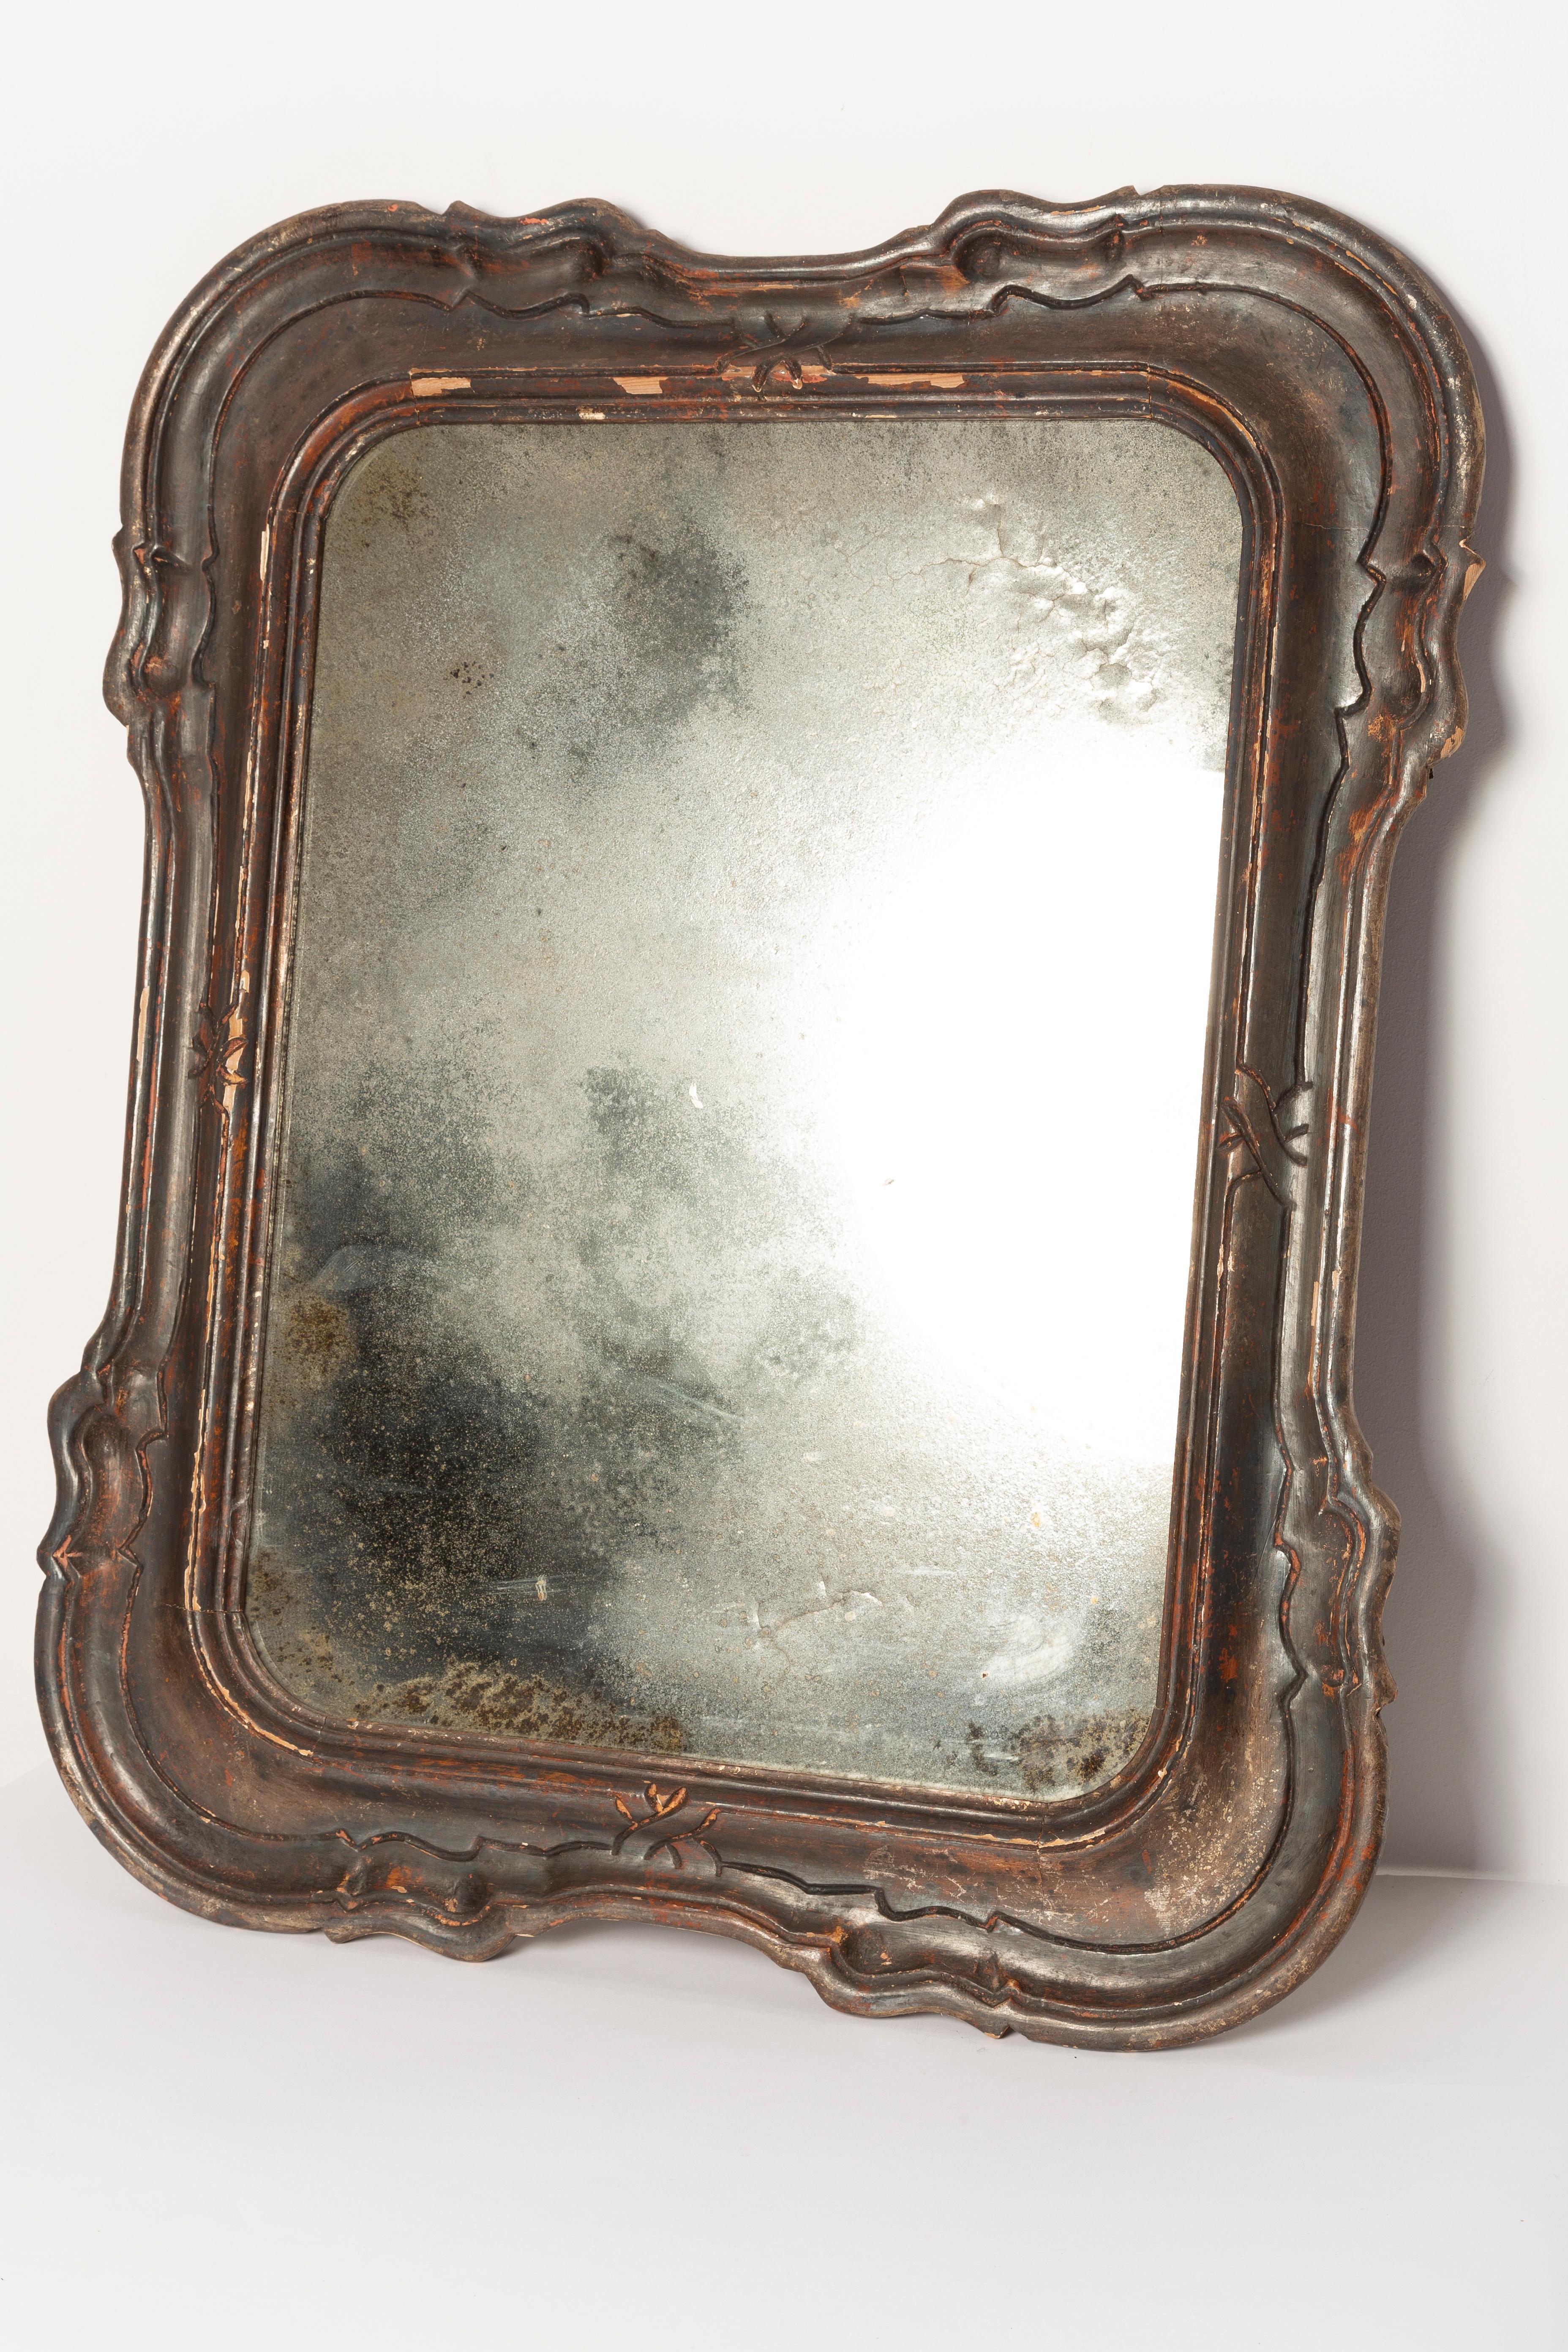 Schöner Spiegel in einem goldenen Zierrahmen aus Italien. Der Rahmen ist aus Holz gefertigt. Der Spiegel ist in sehr gutem Vintage-Zustand. Original Glas. Erstaunliche Patina. Ein schönes Stück für jedes Interieur! Nur ein einziges Stück.